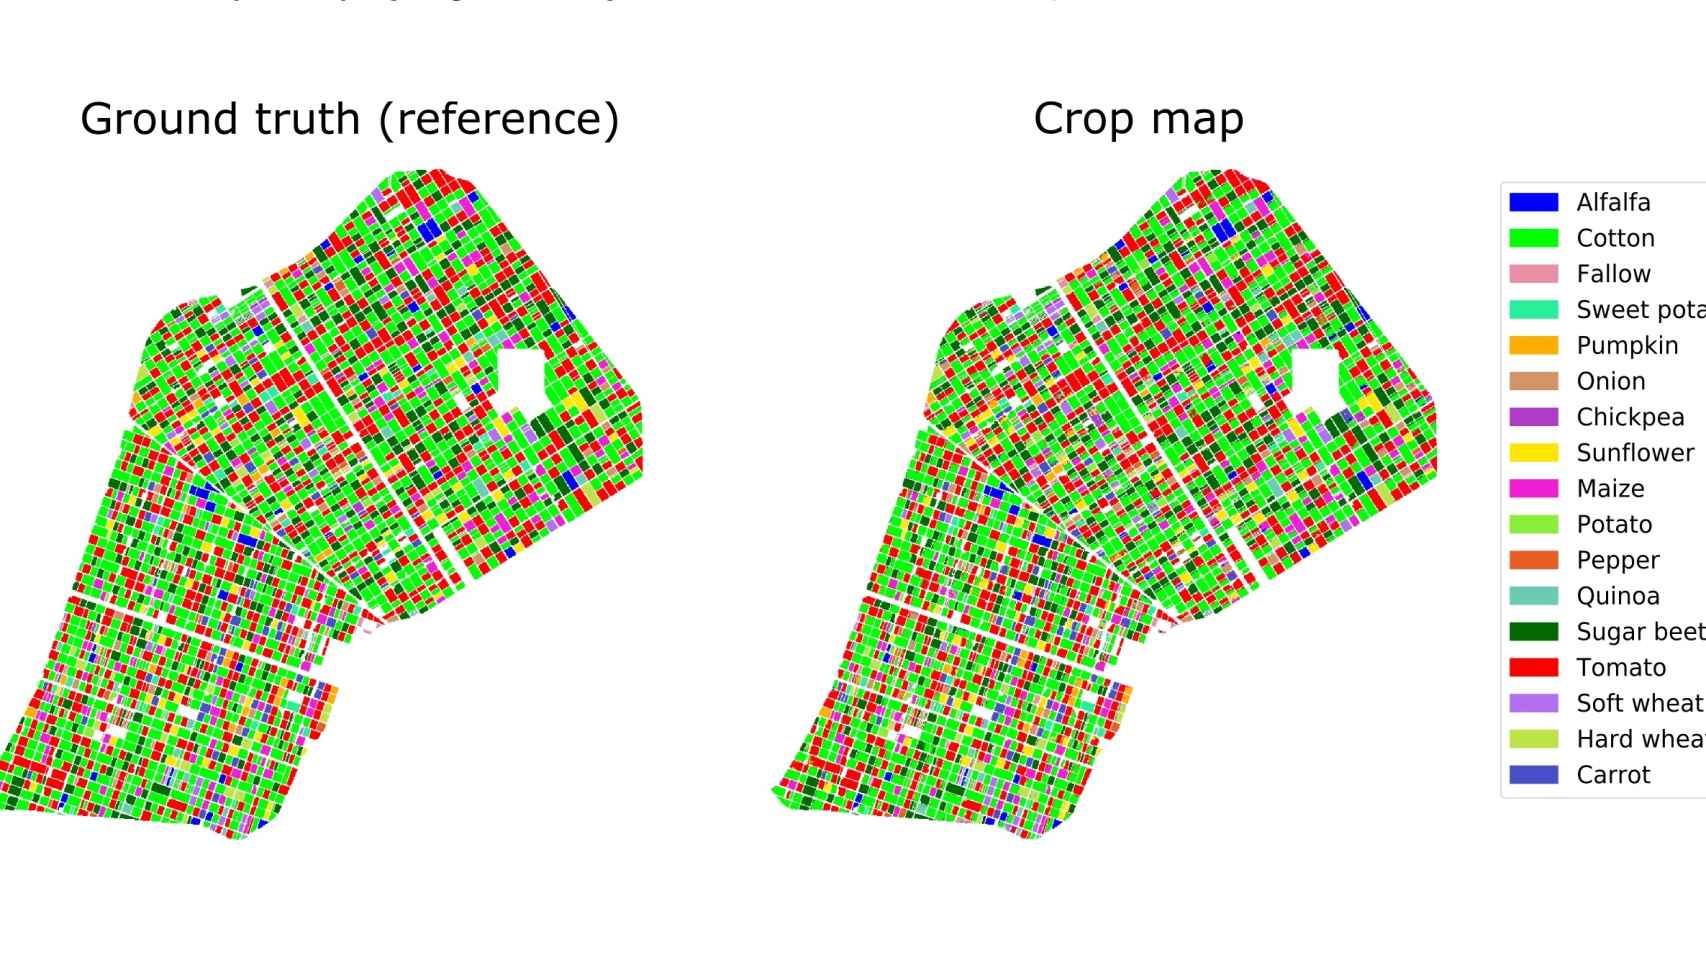 Mapas de cultivos proporcionados por la cartografía espacial.